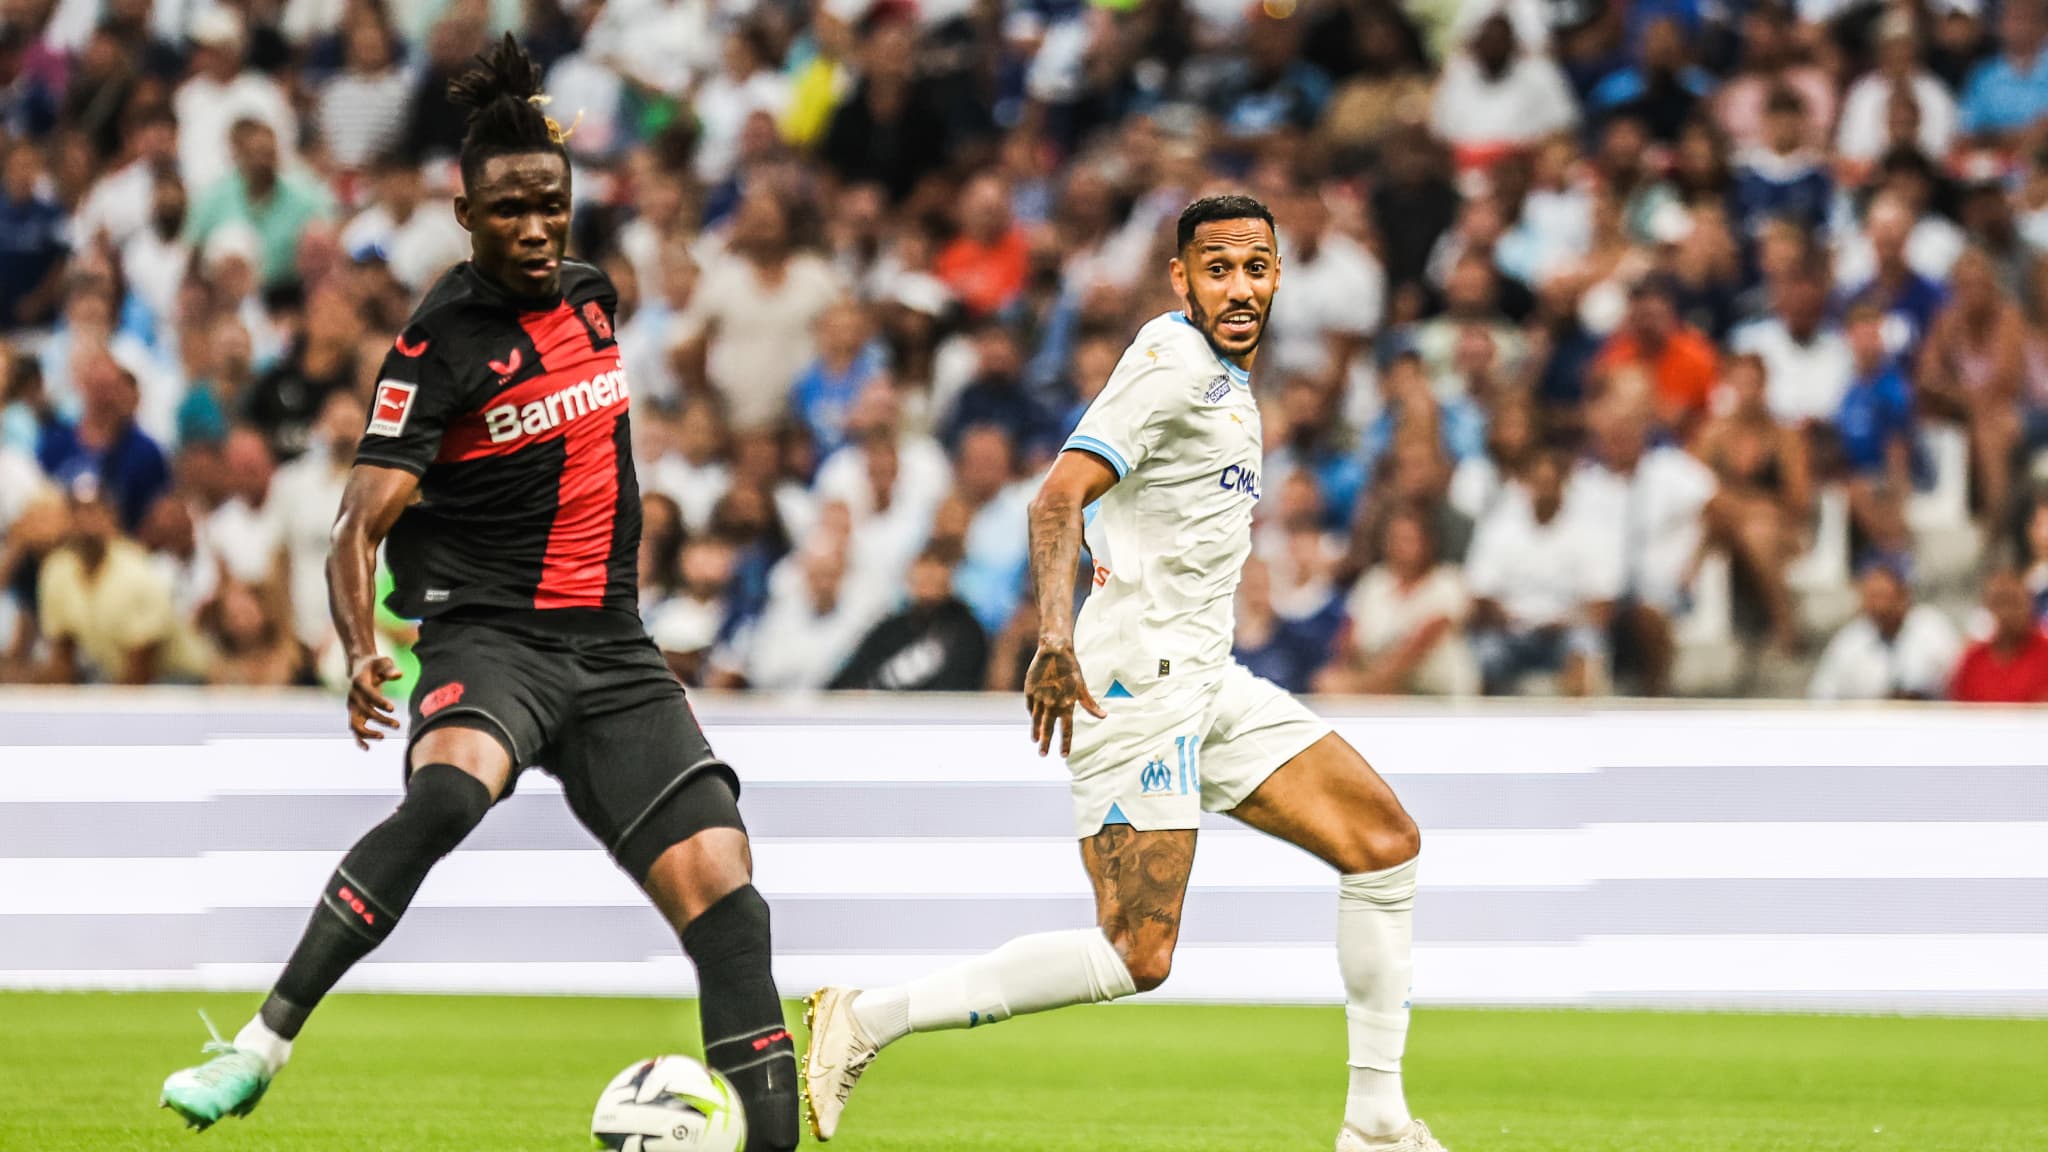 Foot: Marseille battu par Leverkusen en amical (1-2) malgré un Vélodrome  bouillant